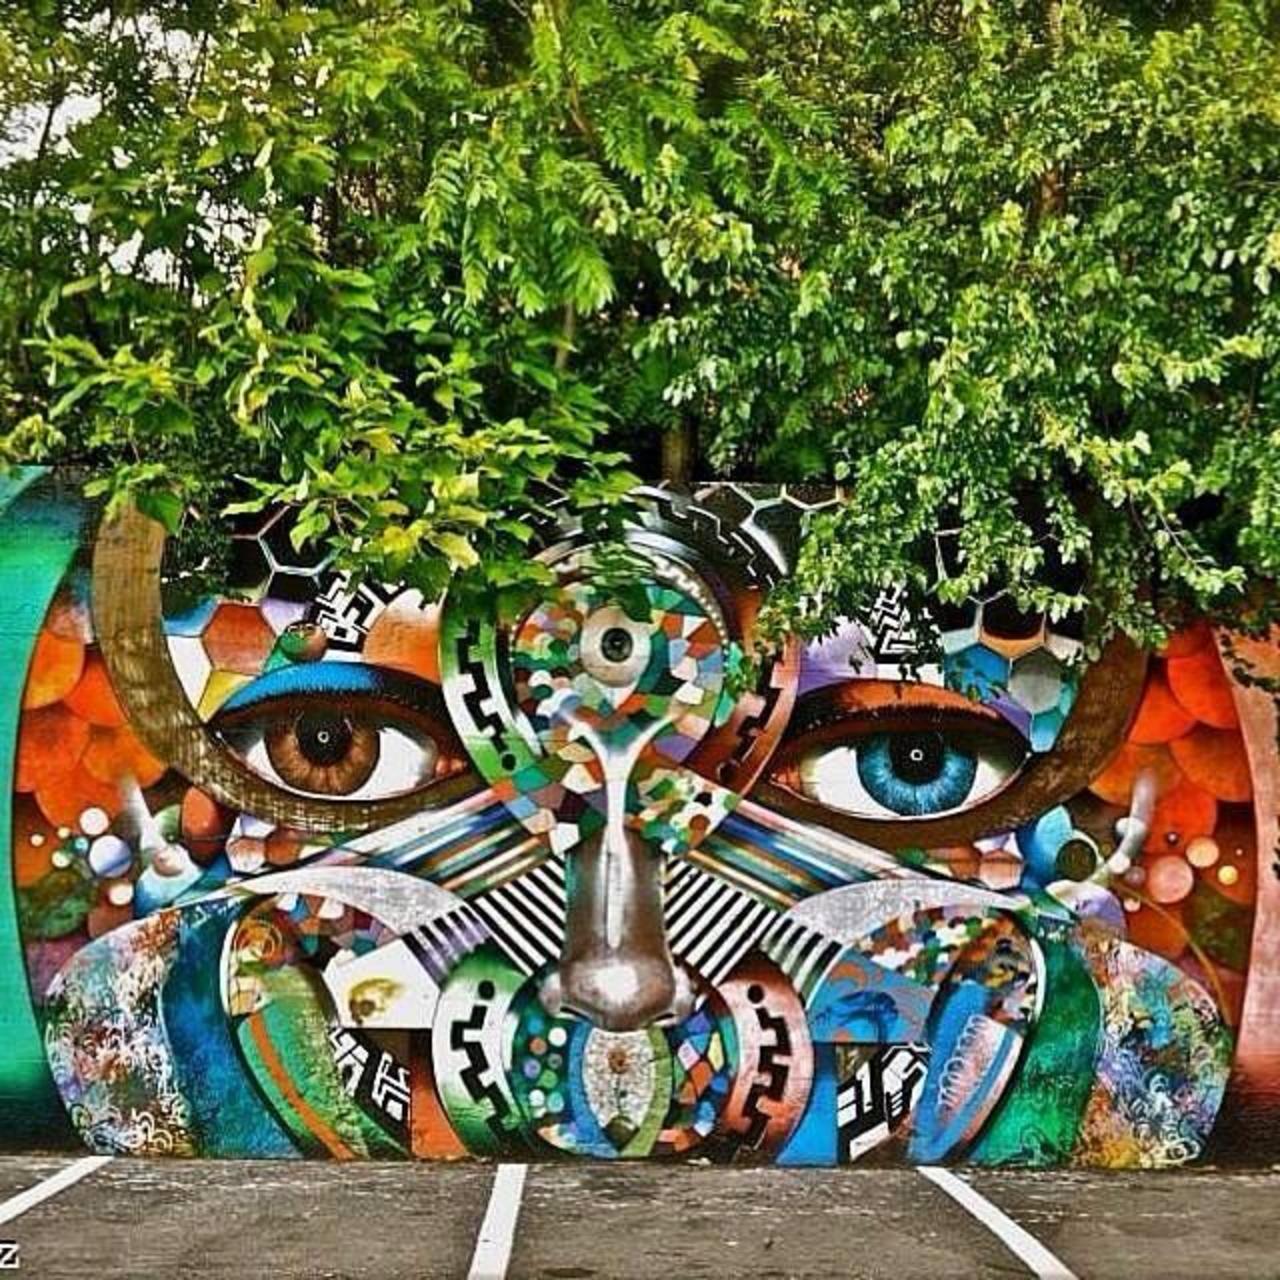 Artist @chorboogie new nature & Street Art piece. #art #mural #graffiti #streetart http://t.co/KdezPU8jBo